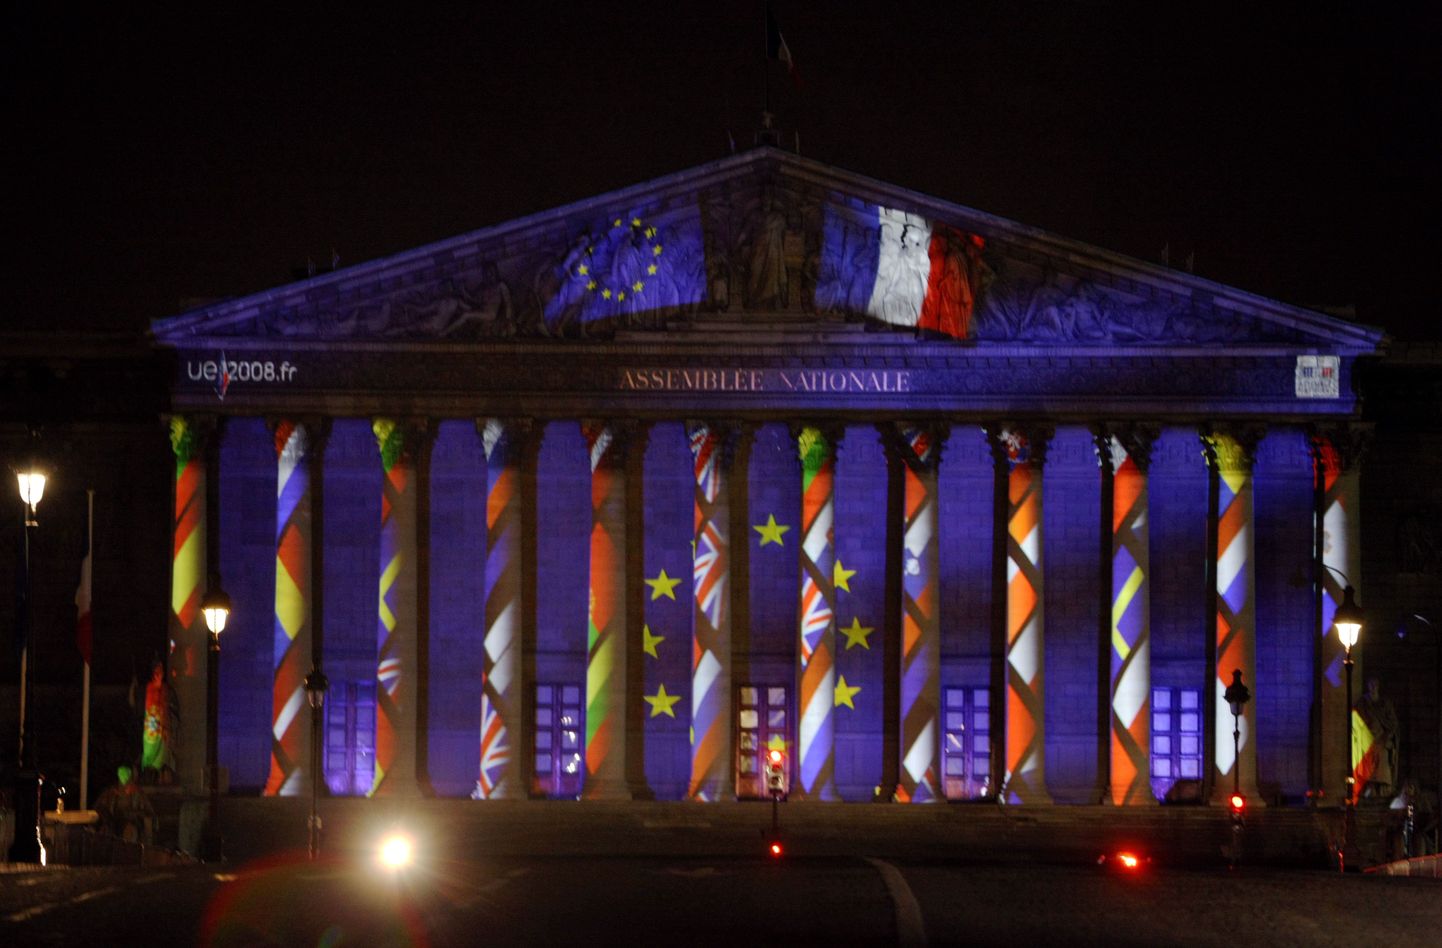 Euroopa Liidu liikmesmaade rahvuslipud projitseerituna Prantsuse rahvusassamblee hoone fassaadile.